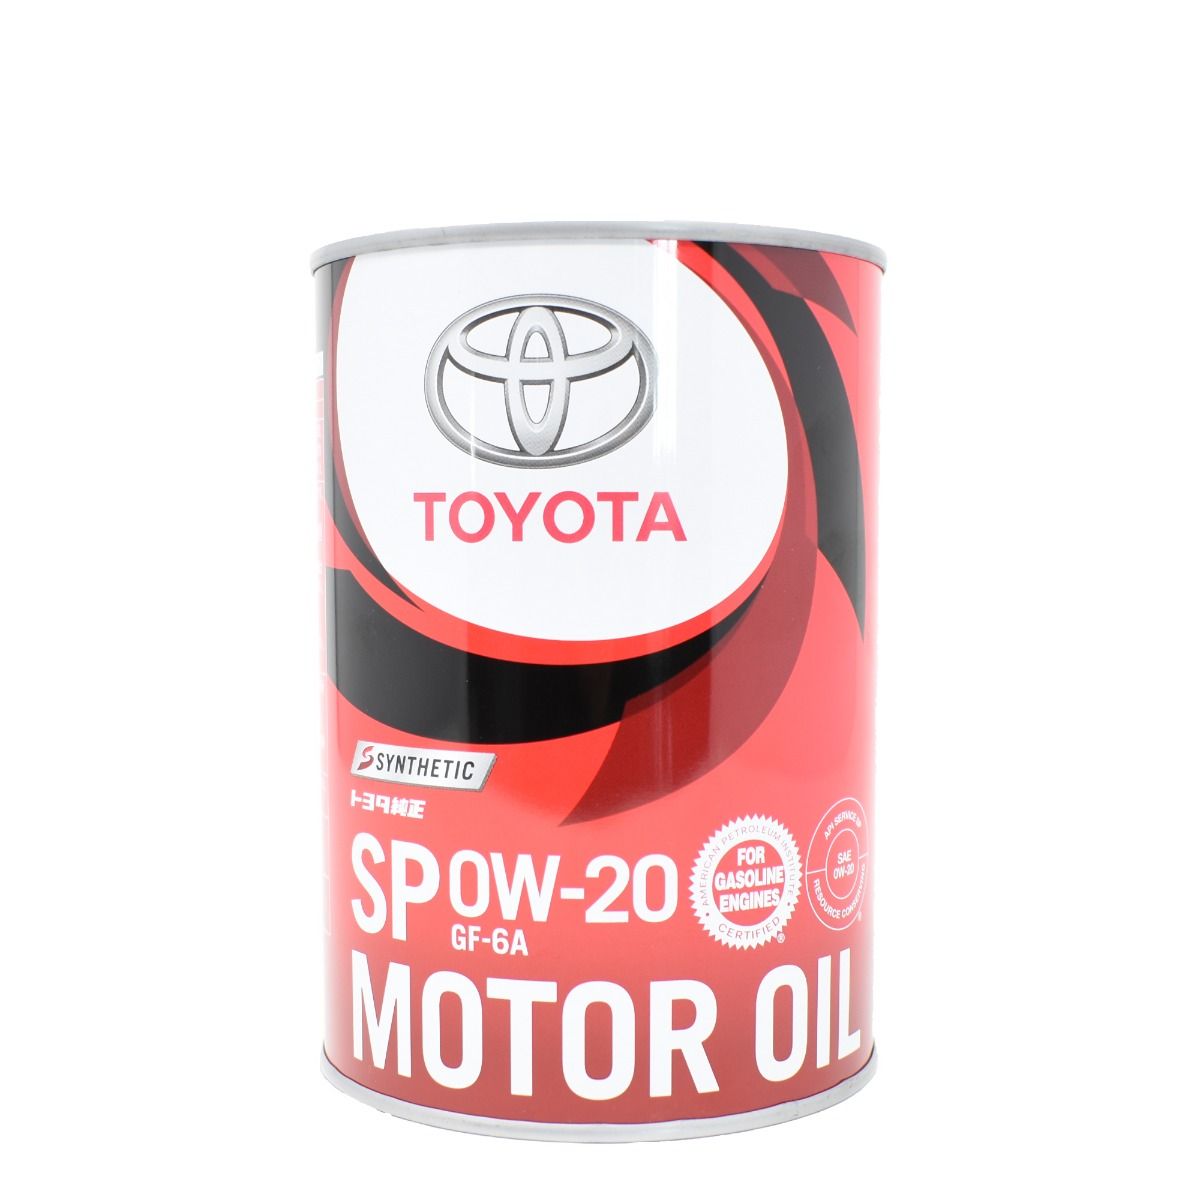 Toyota Motoröl 0W-20 SP bei ATO24 ❗